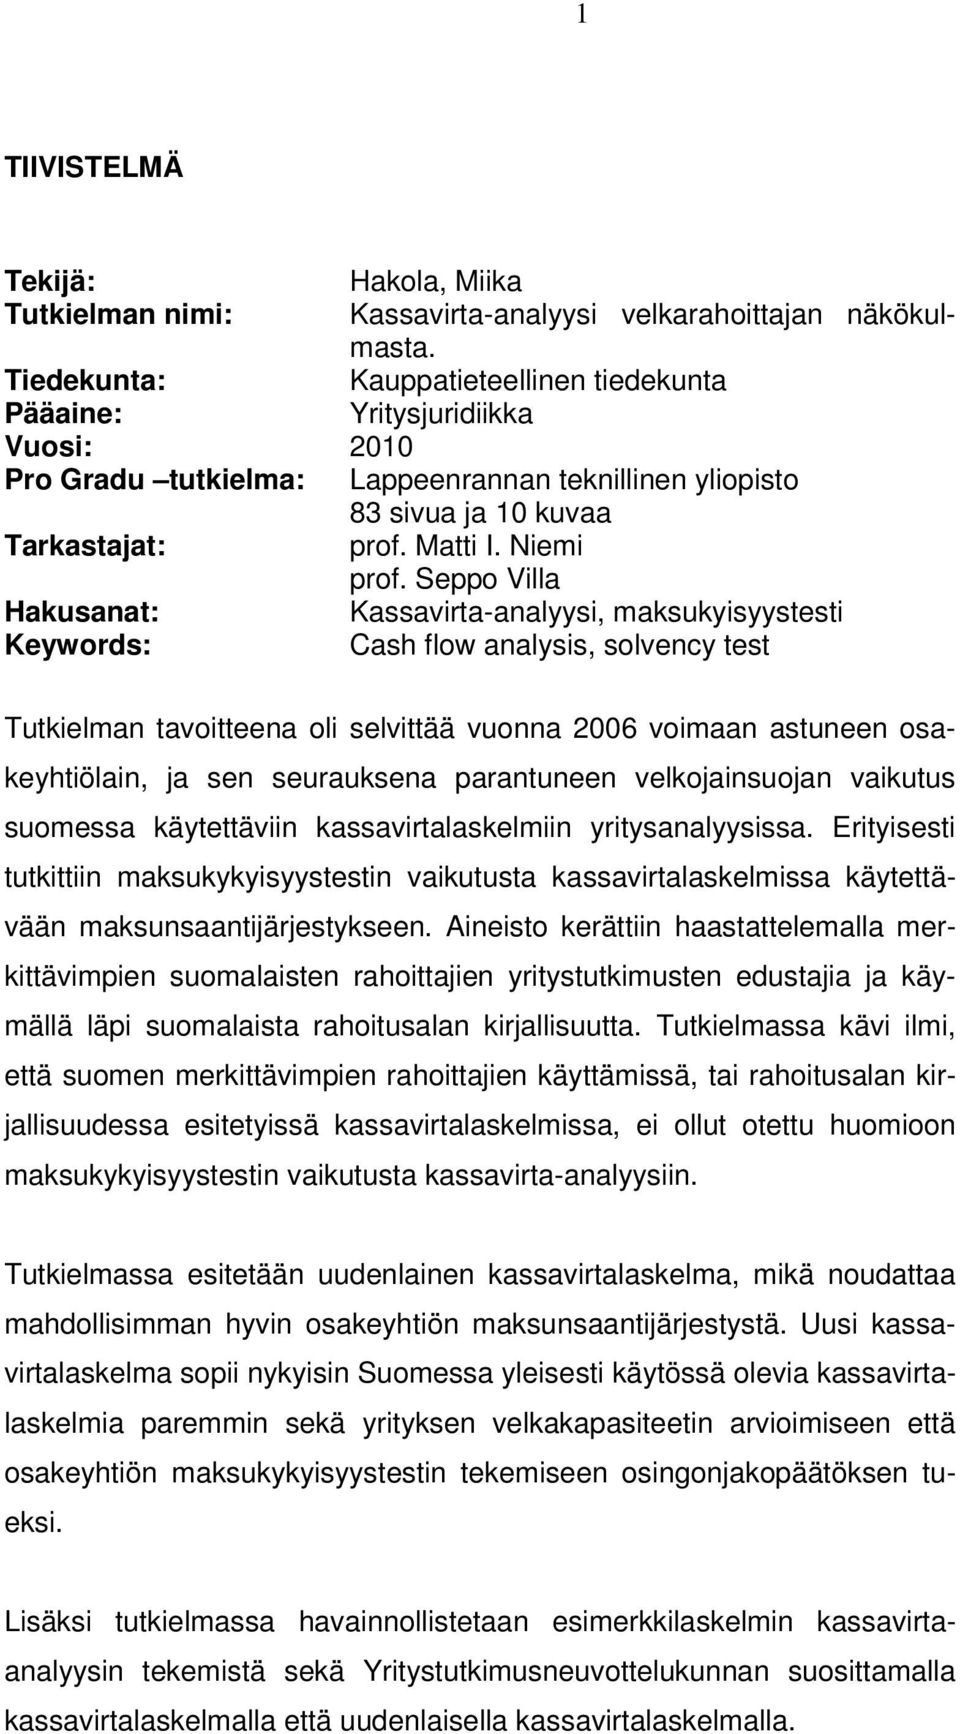 Seppo Villa Hakusanat: Kassavirta-analyysi, maksukyisyystesti Keywords: Cash flow analysis, solvency test Tutkielman tavoitteena oli selvittää vuonna 2006 voimaan astuneen osakeyhtiölain, ja sen